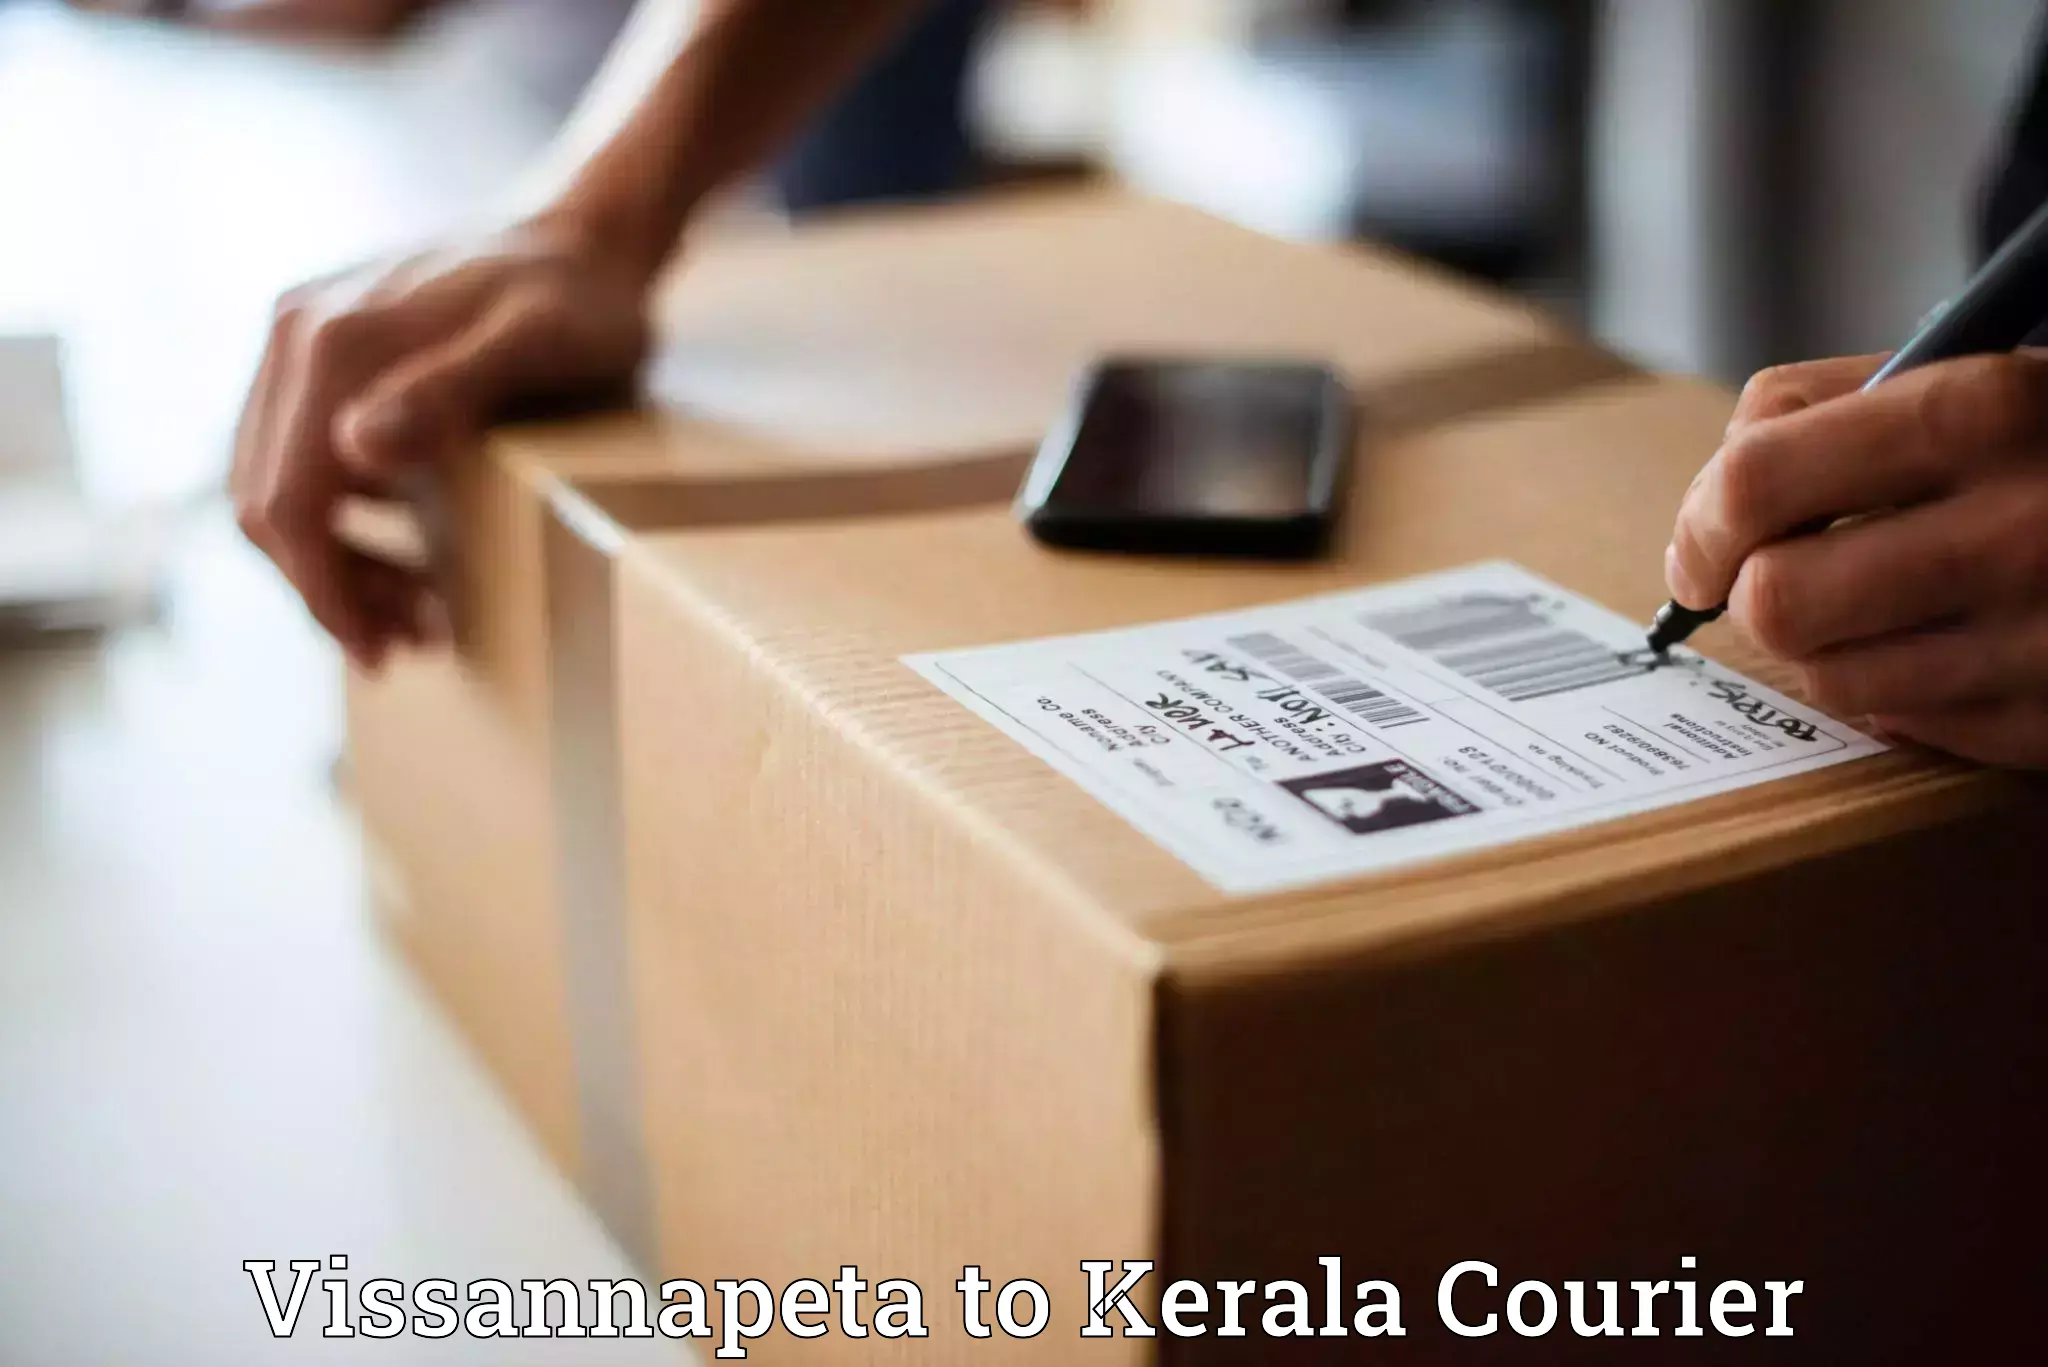 End-to-end delivery Vissannapeta to Neyyattinkara